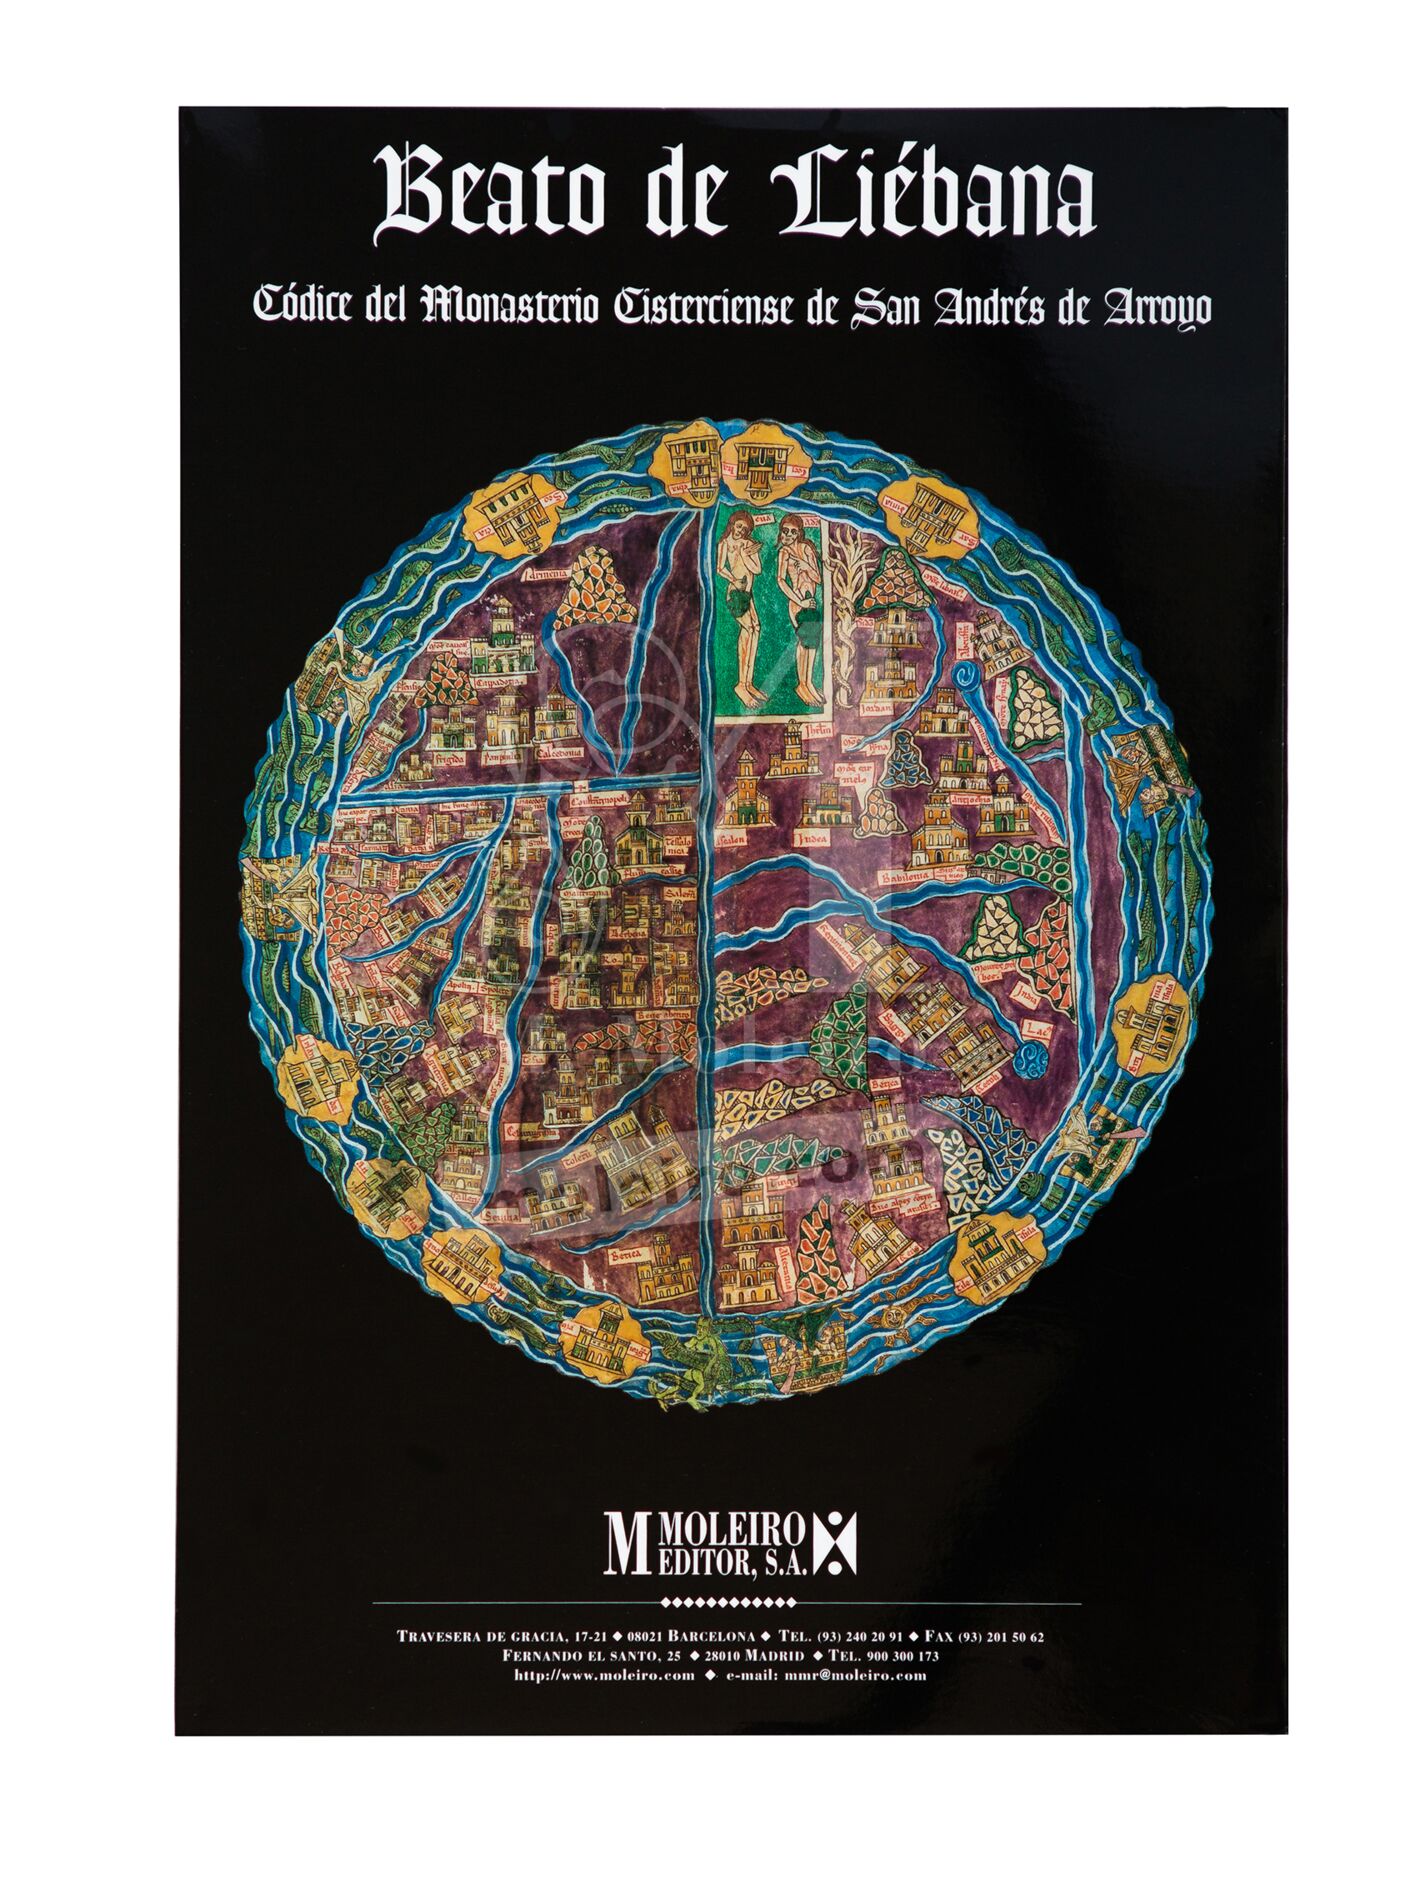 <p>Portada de la carpeta con 12 posters del Beato de Liébana, códice de San Andrés de Arroyo</p>
